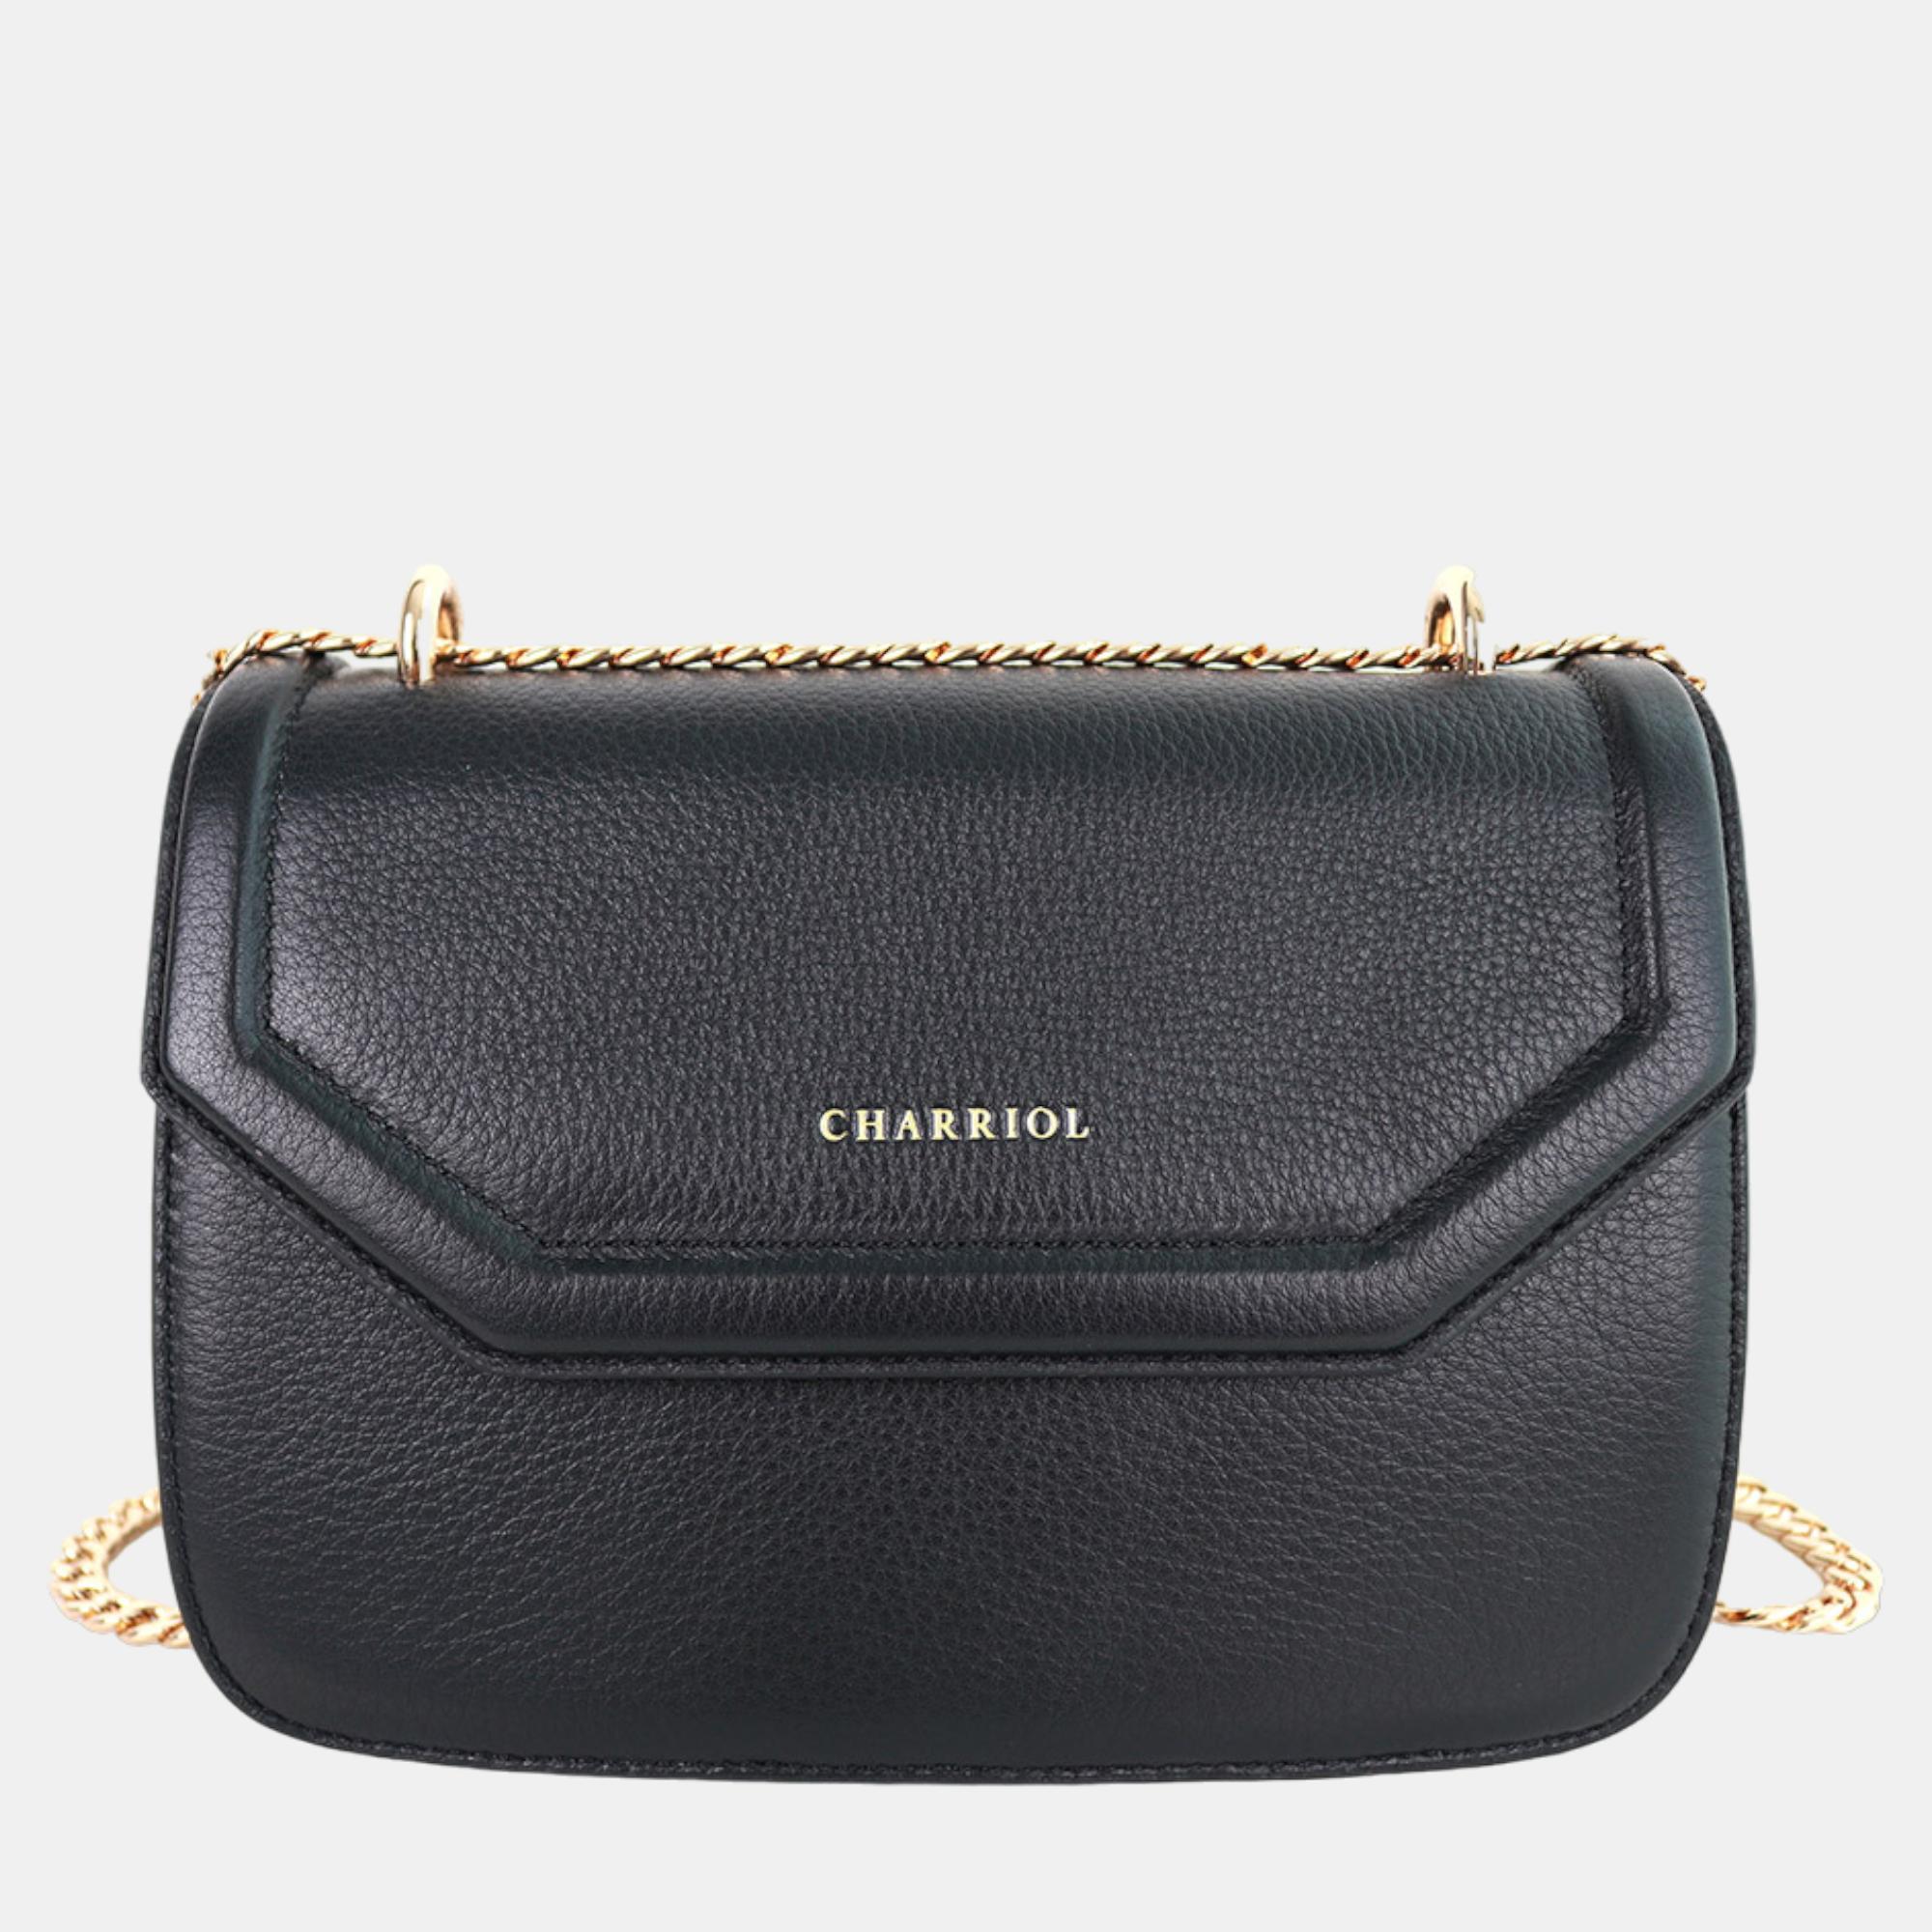 Charriol Black Leather Twilight Handbag